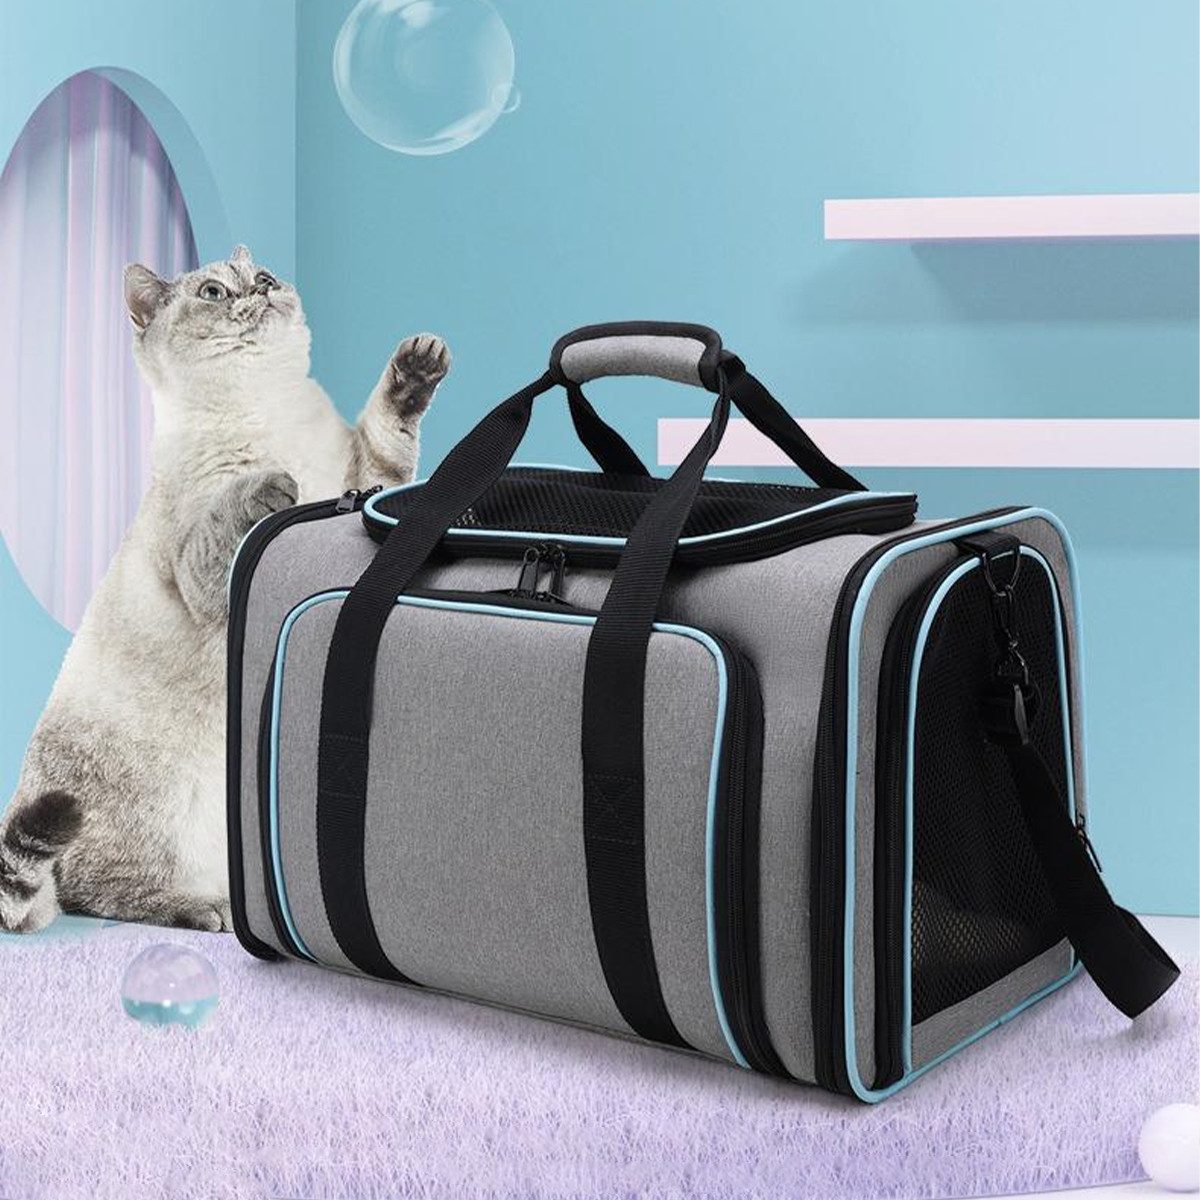 Kpaloft Tiertransporttasche Rucksack für Hund Katze gepolstert, Transportbox für Hunde und Katzen bis 6,80 kg, Tiertransportbox, Hundekäfig, Haustier Tragetasche